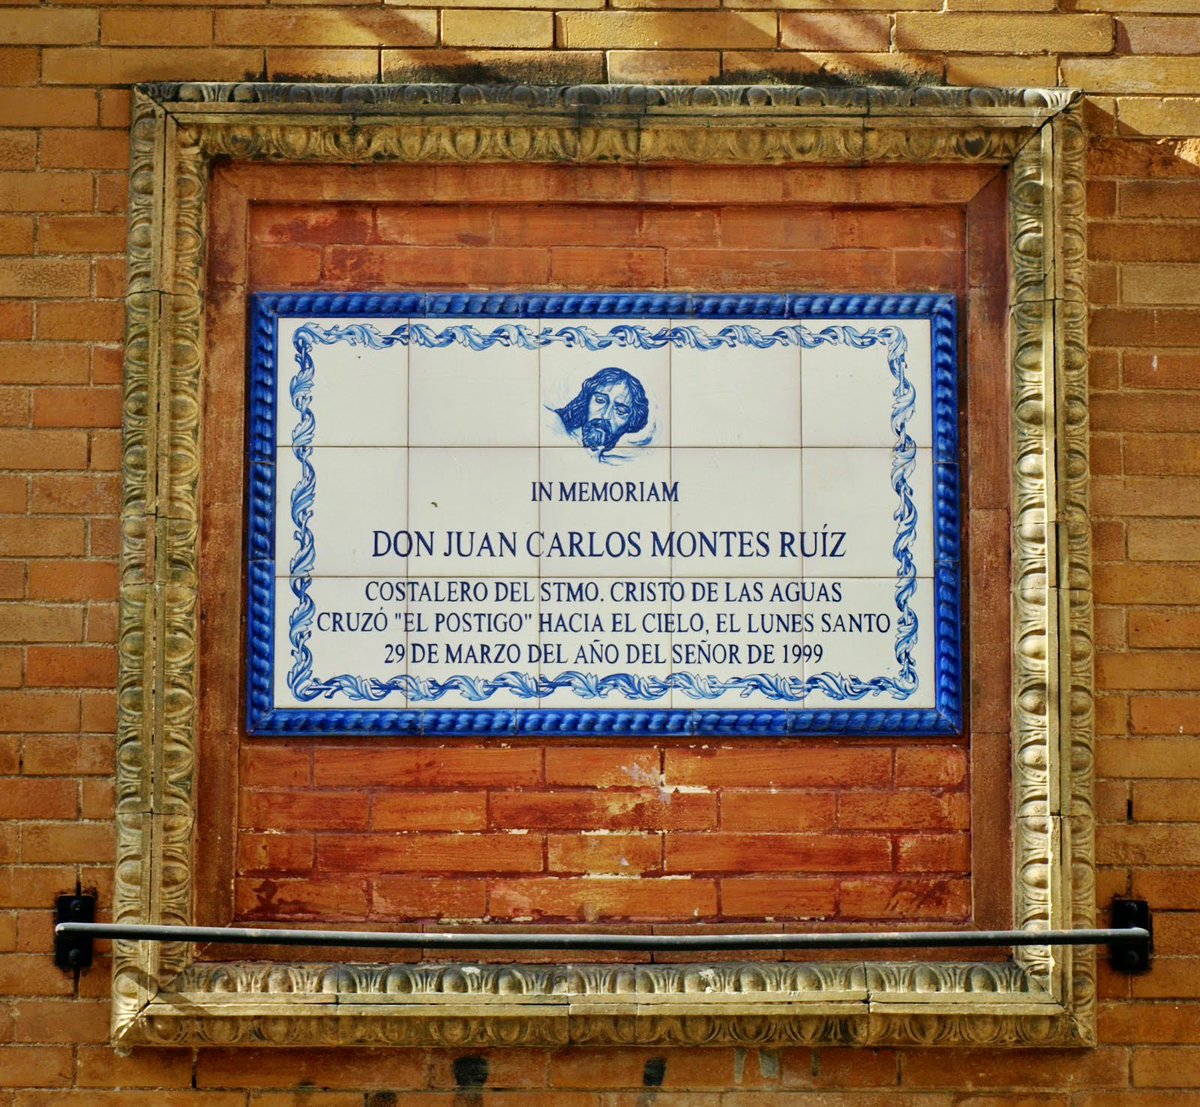 Hoy se cumplen 25 años del fallecimiento de Juan Carlos Montes en el arco del postigo. 25 años en la cuadrilla del cielo de la @hdadlasaguas. Nuestro recuerdo a la hermandad y a su familia.